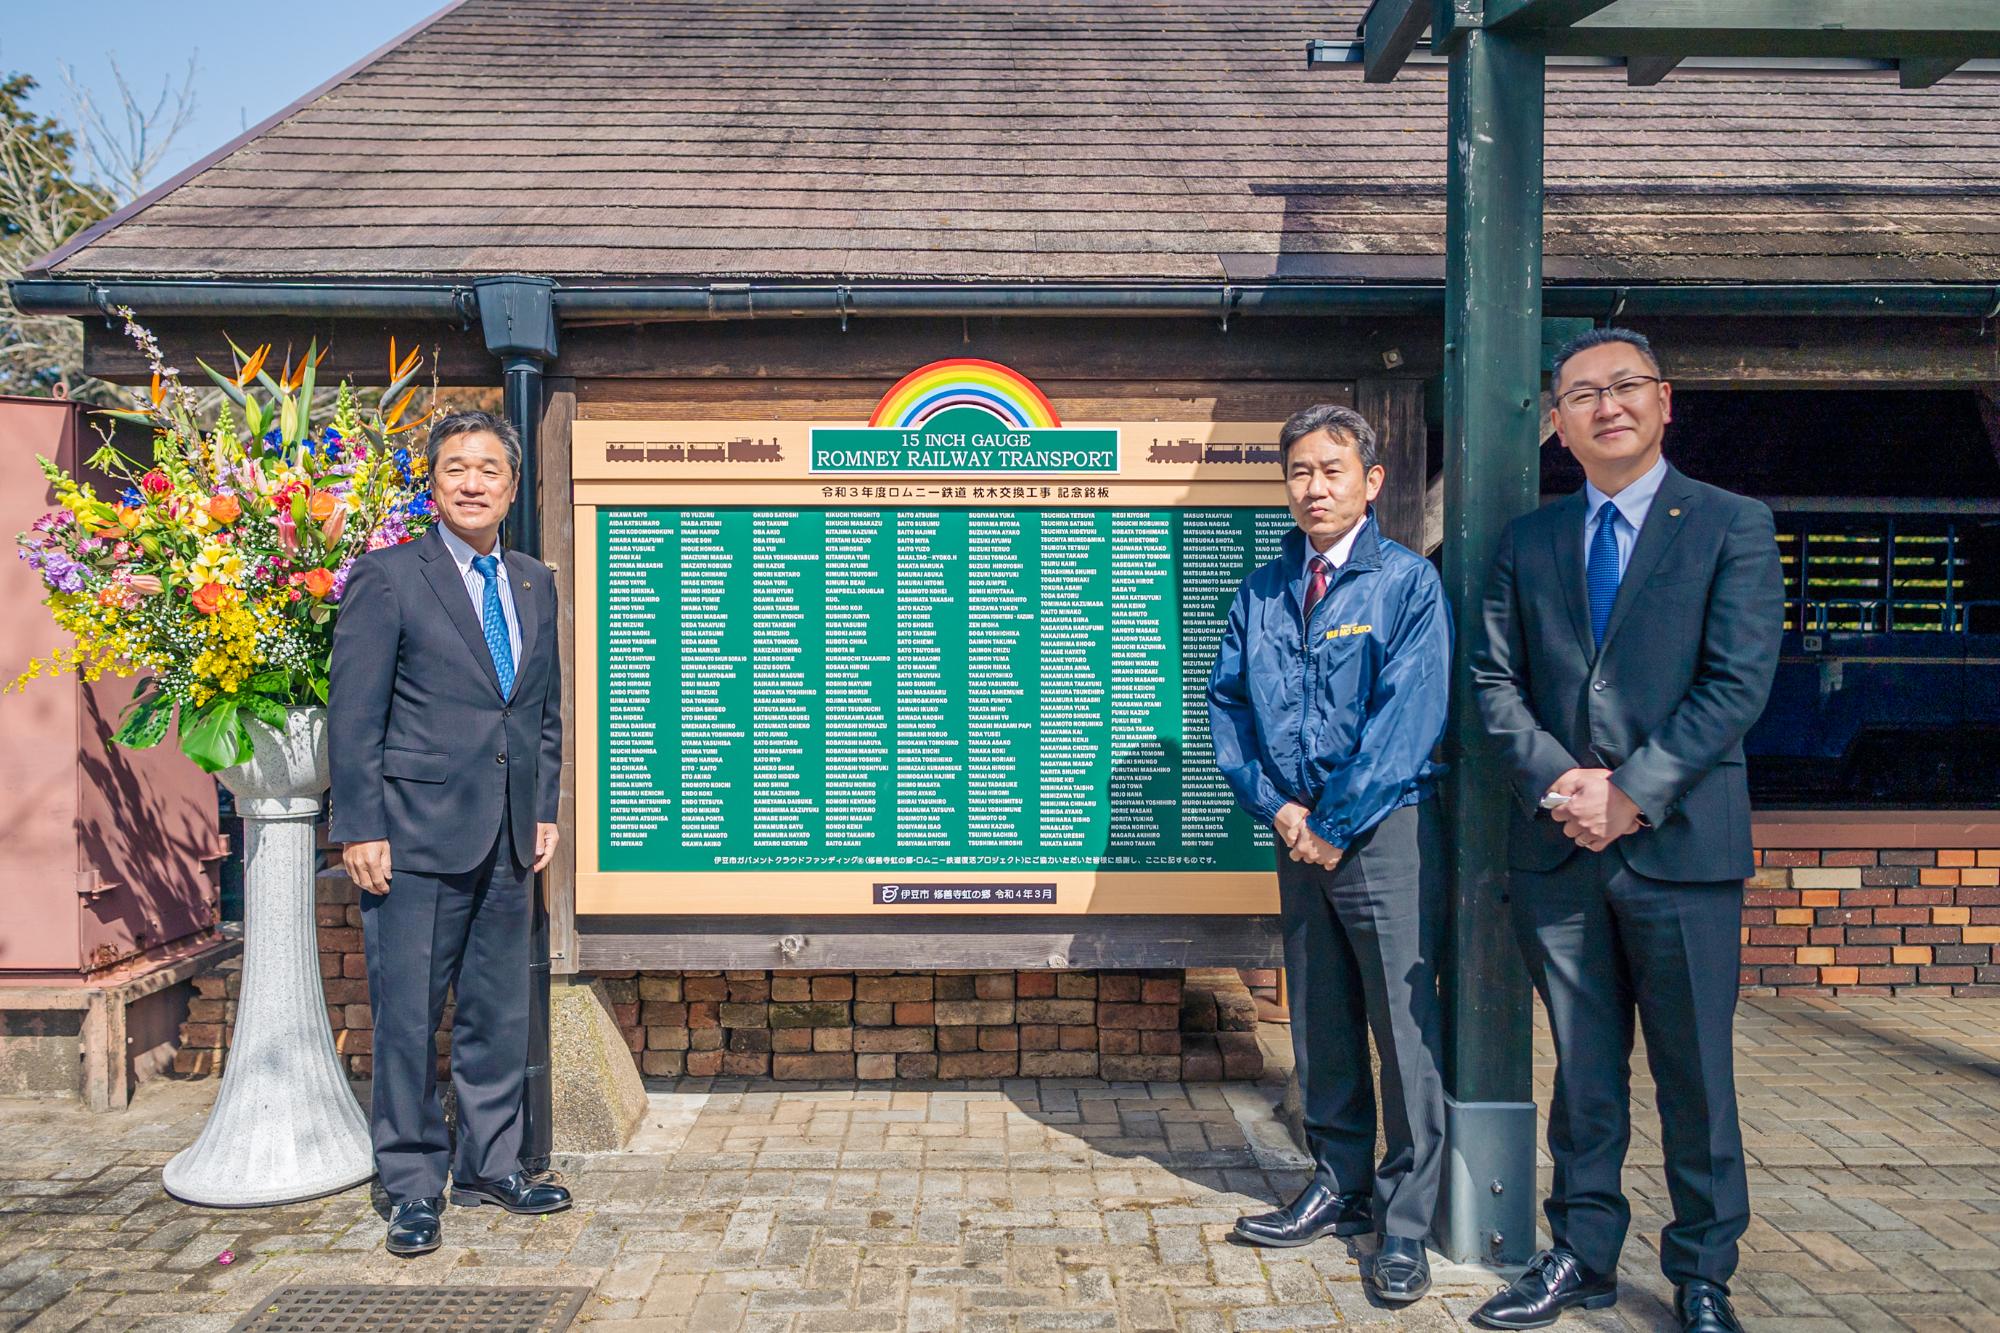 設置した銘板を挟んで、菊地市長、山下支配人、佐藤副市長の記念写真